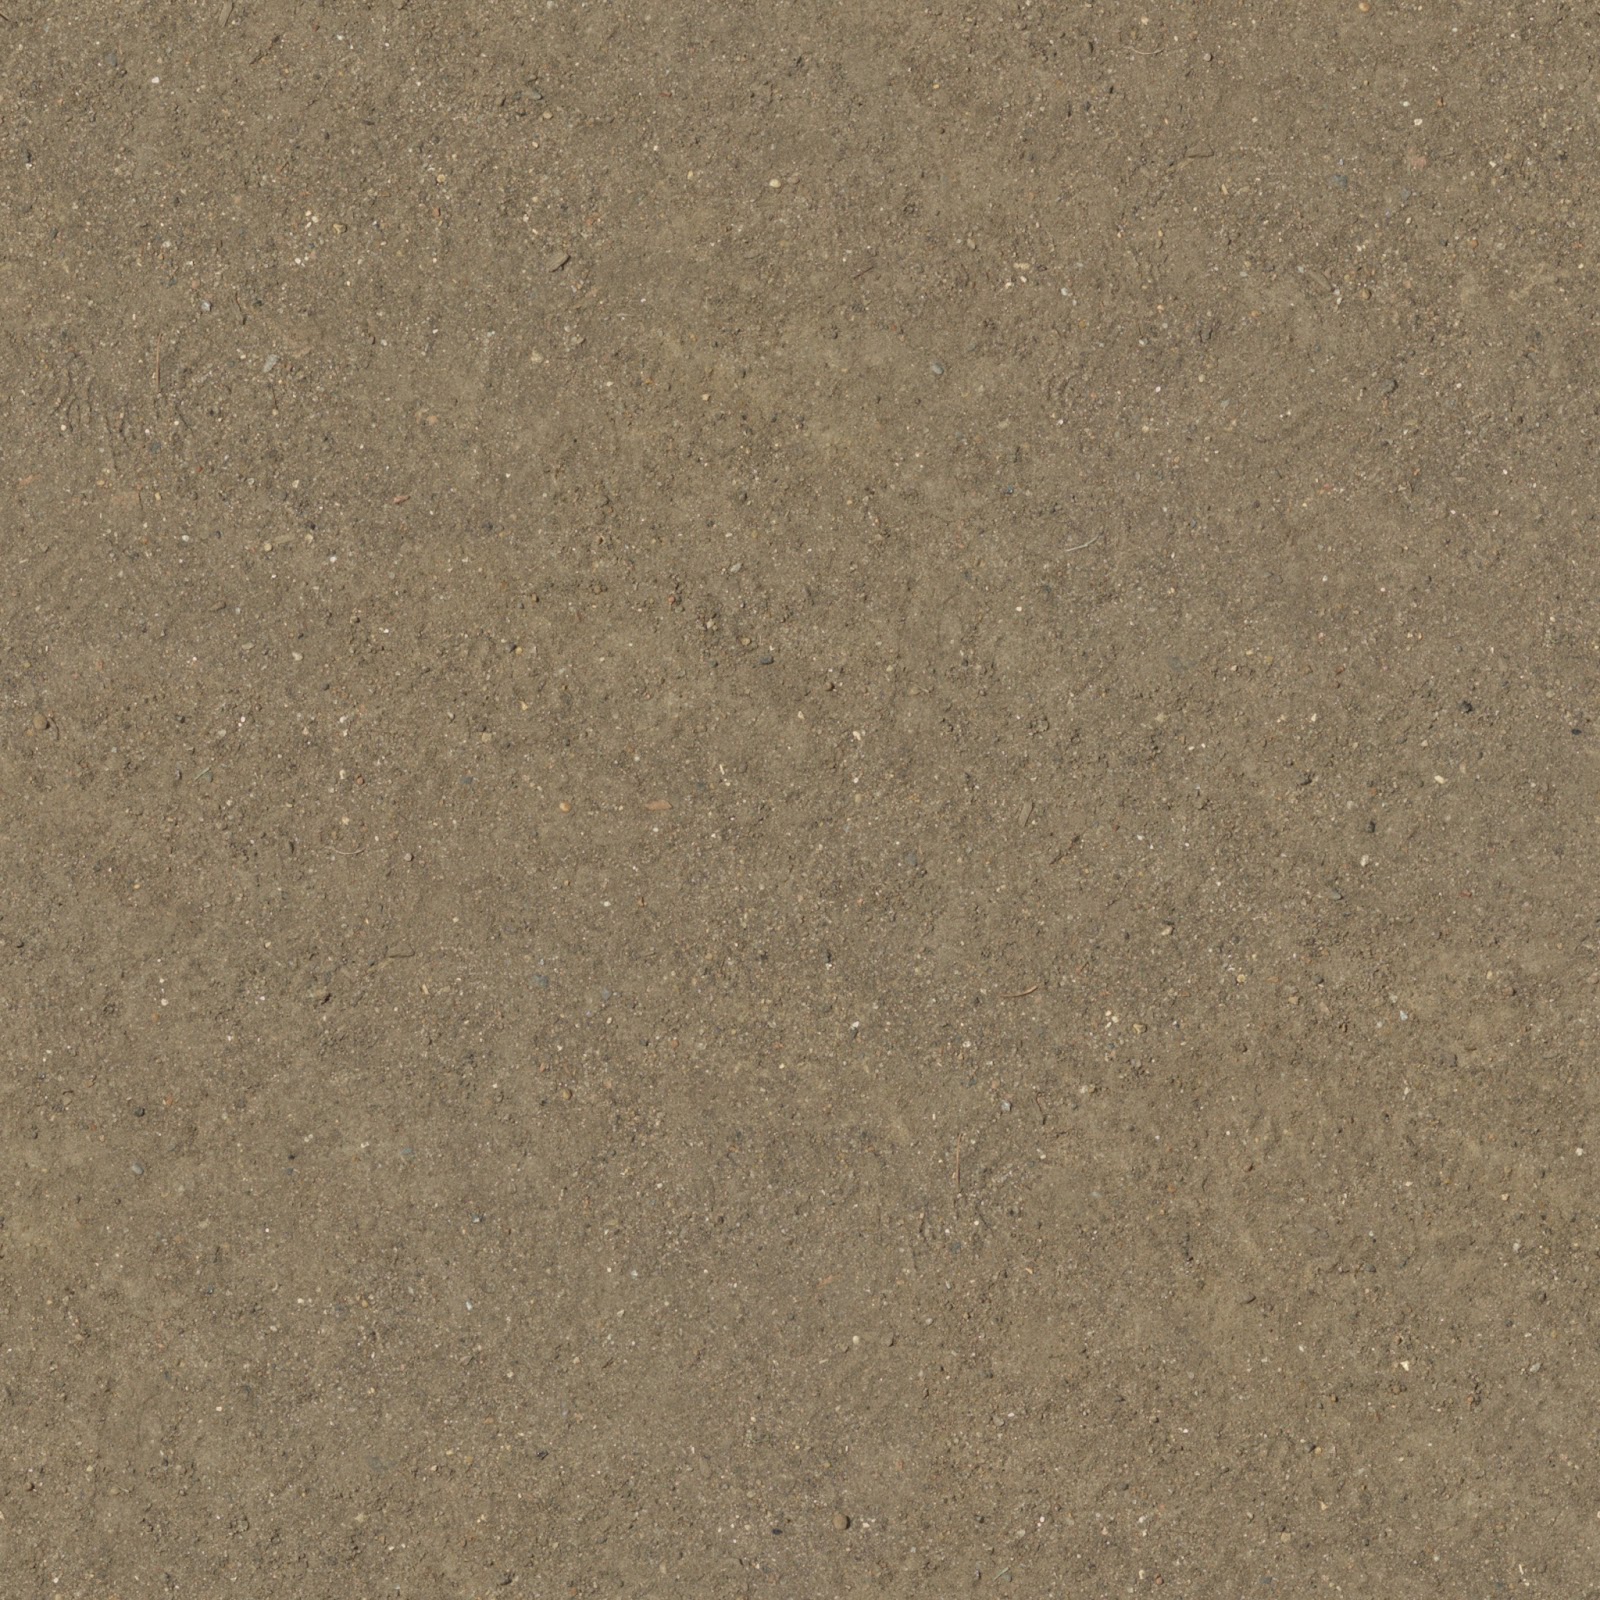 (DIRT 3) seamless soil dust dirt sand ground texture